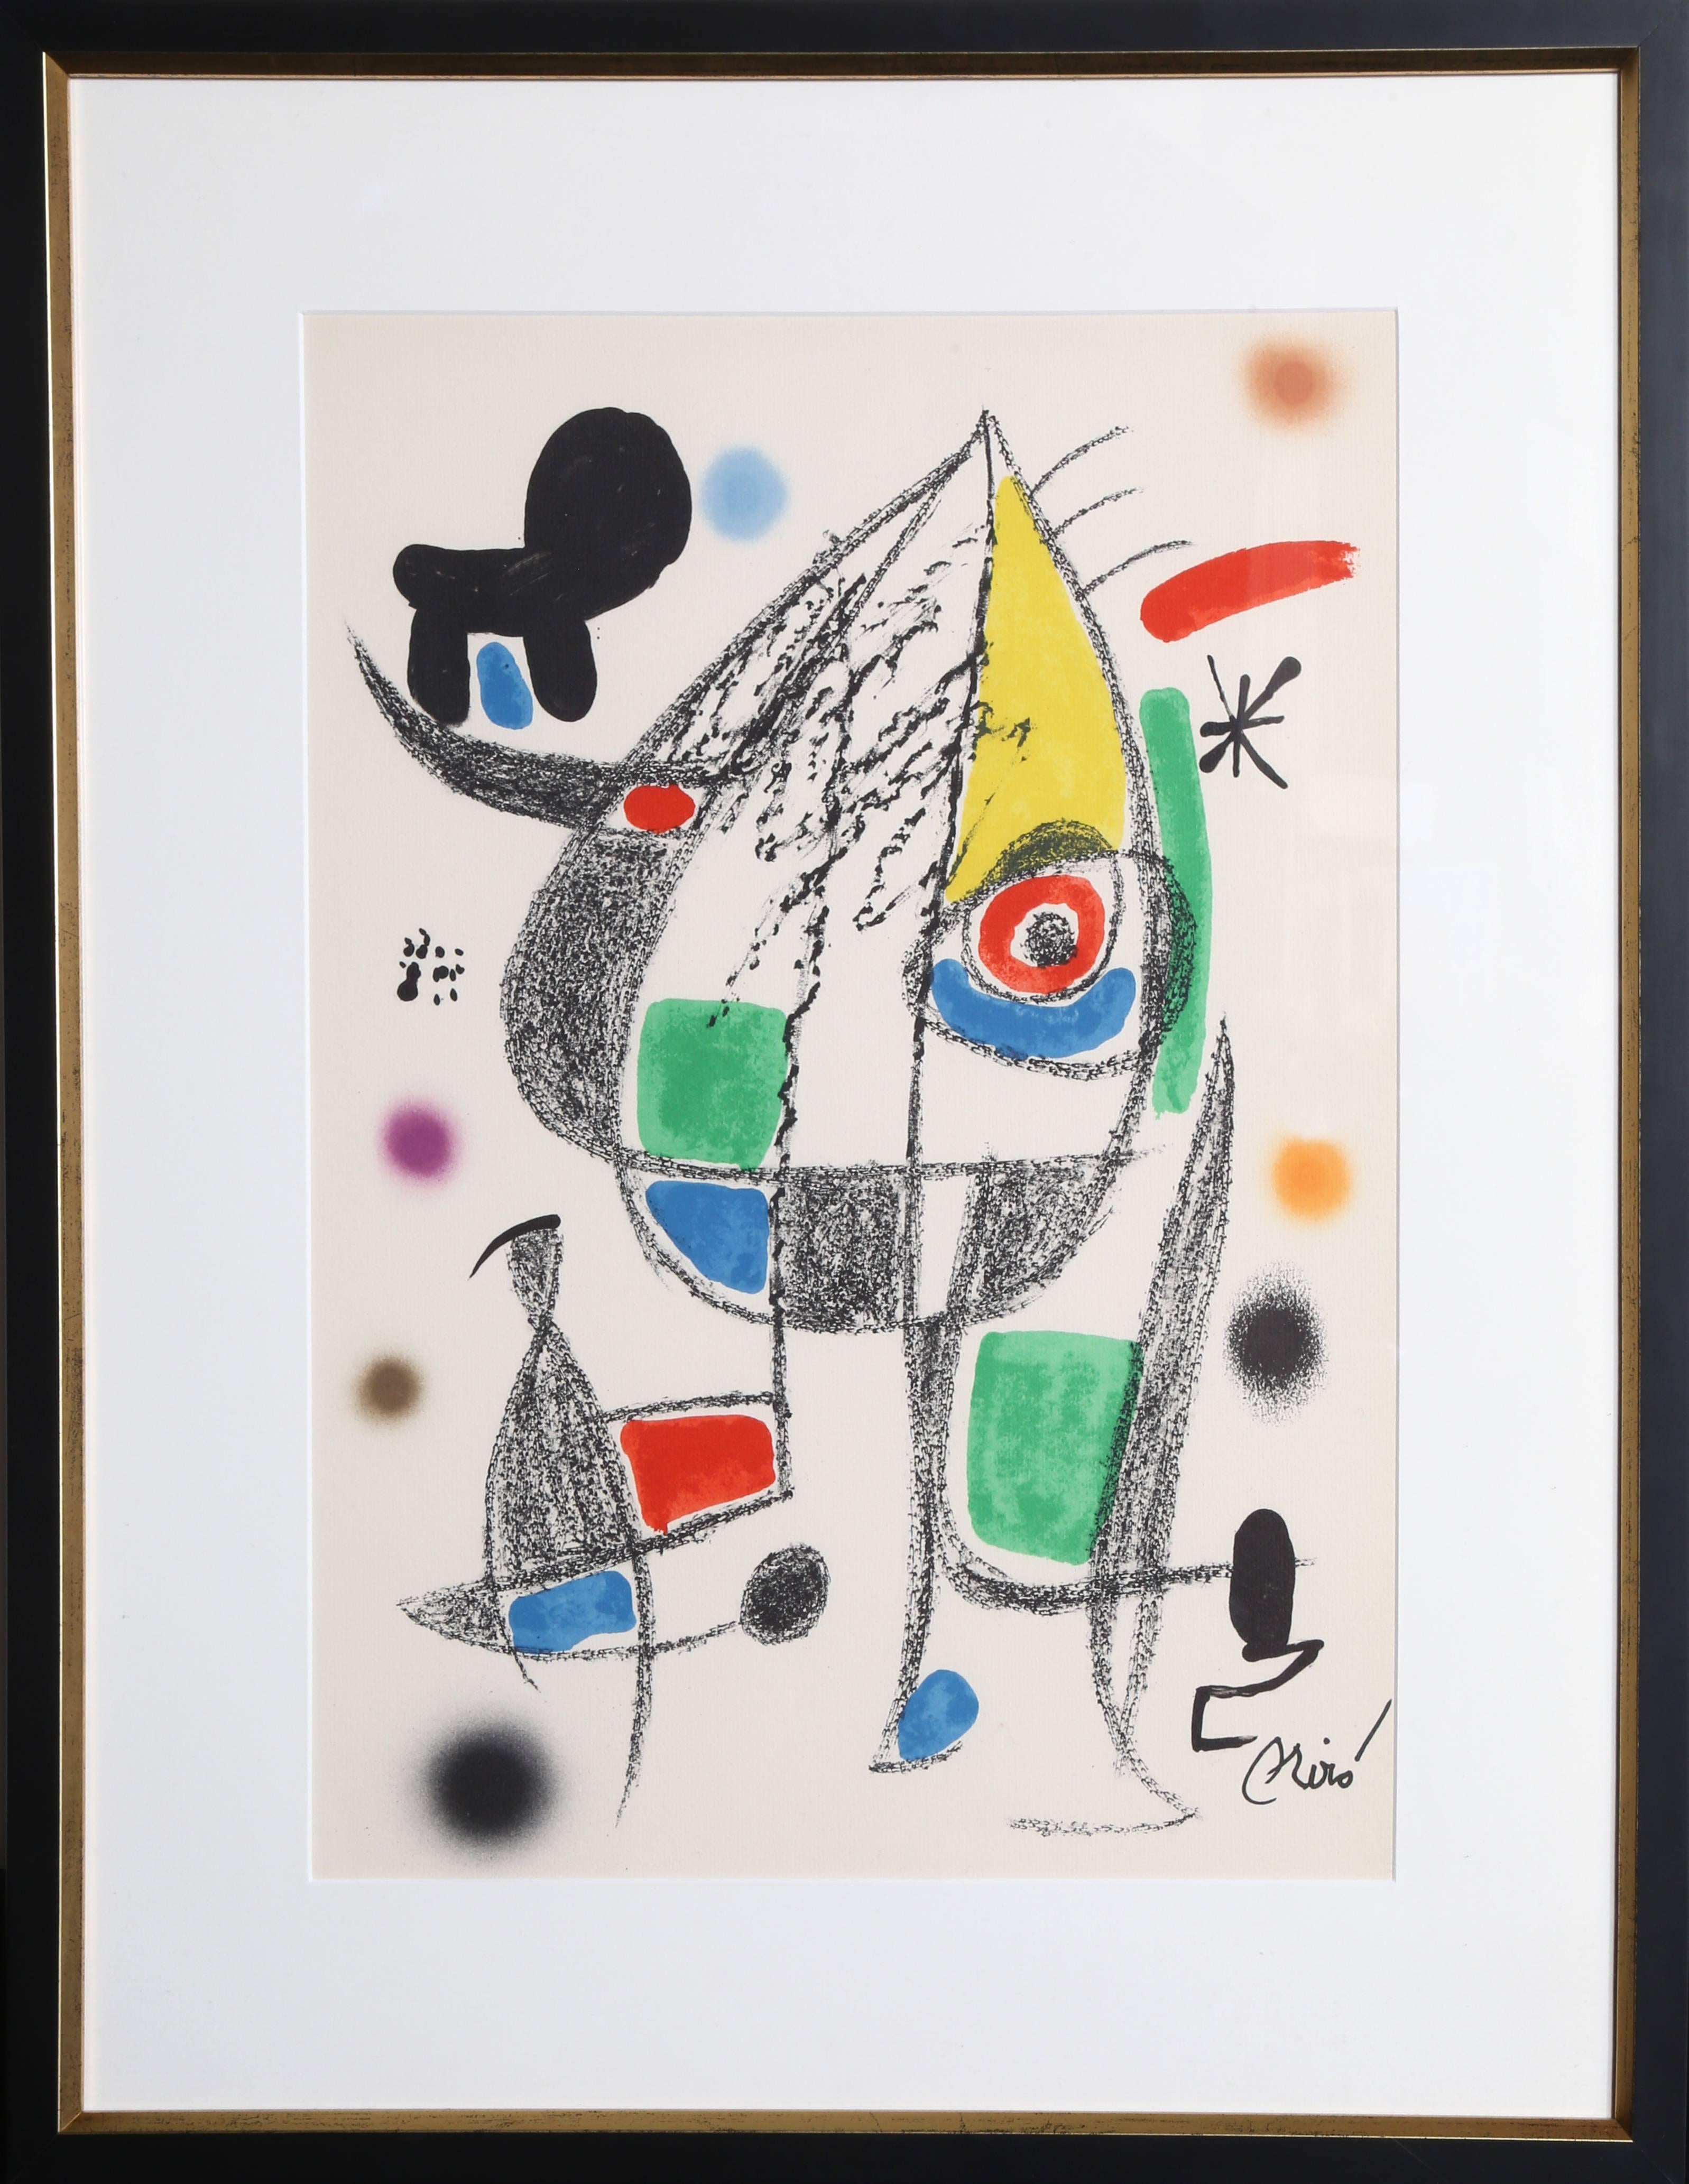 Joan Miró Abstract Print – Maravillas mit Variaciones Acrosticas en el Jardin de Miro (Nr. 22)